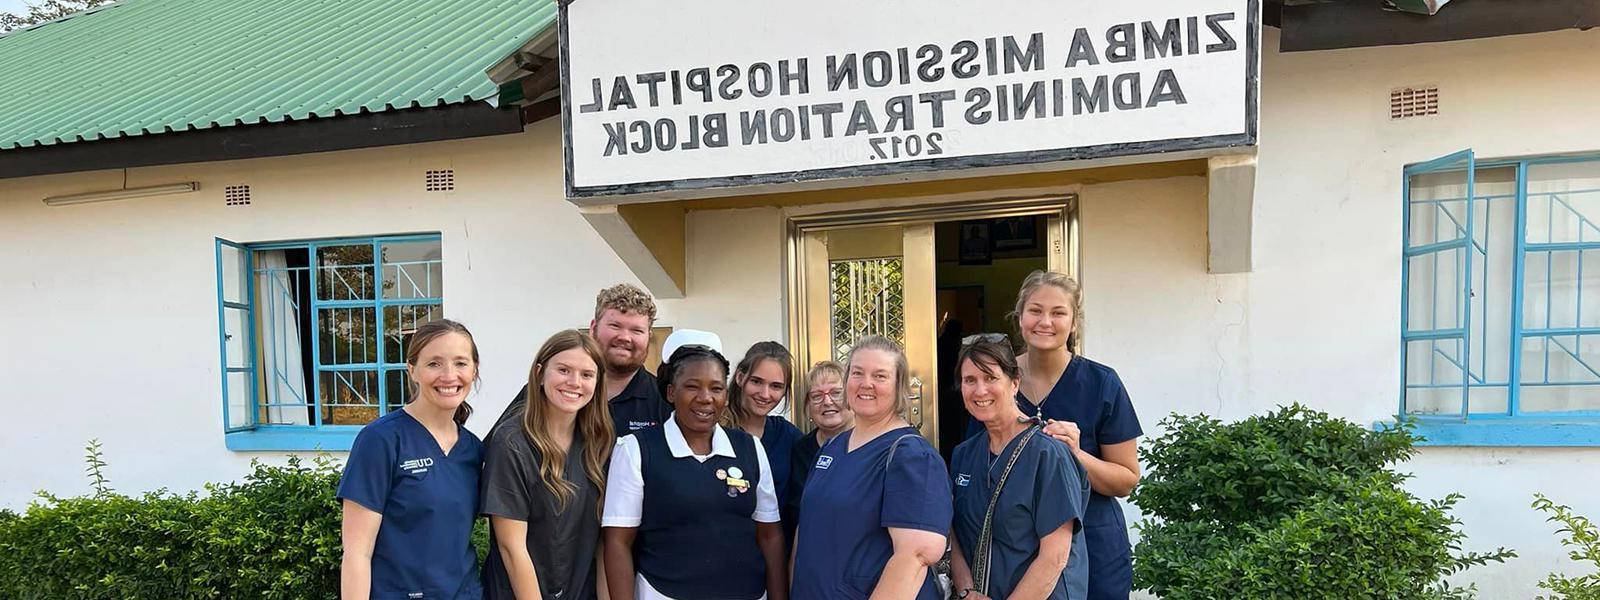 赞比亚一家医院外，CIU护理专业的学生与工作人员合影留念. (Facebook: Emily Woodard) 